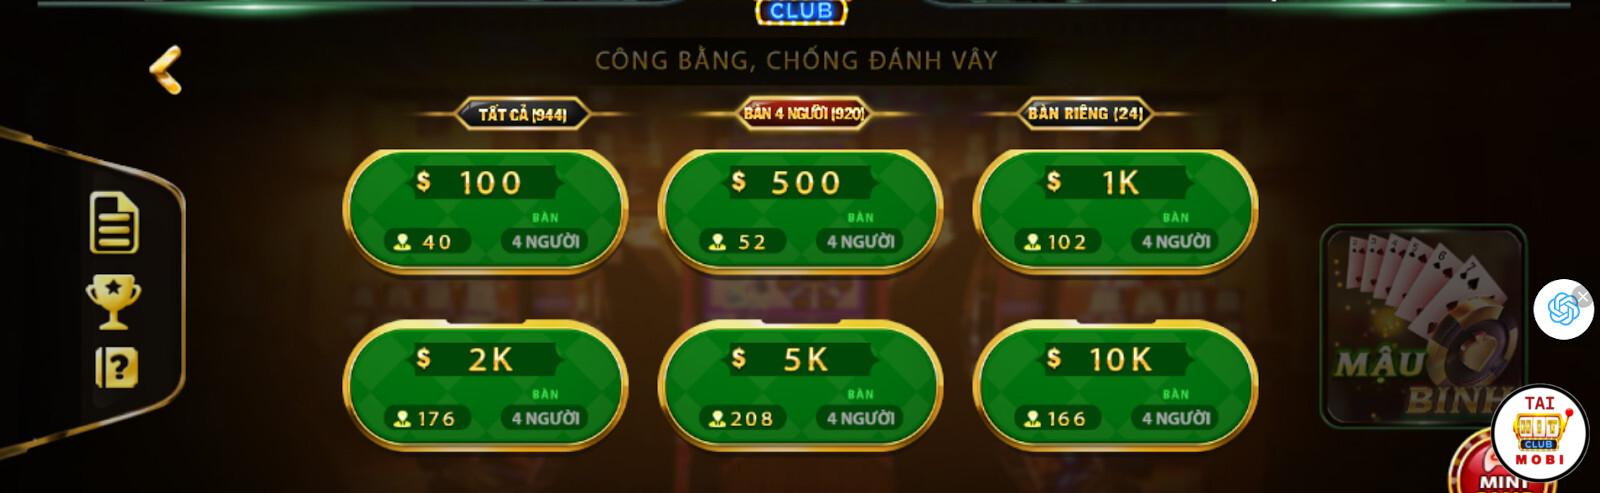 Cách chơi Mậu Binh tại Hitclub đơn giản dành cho người mới bắt đầu